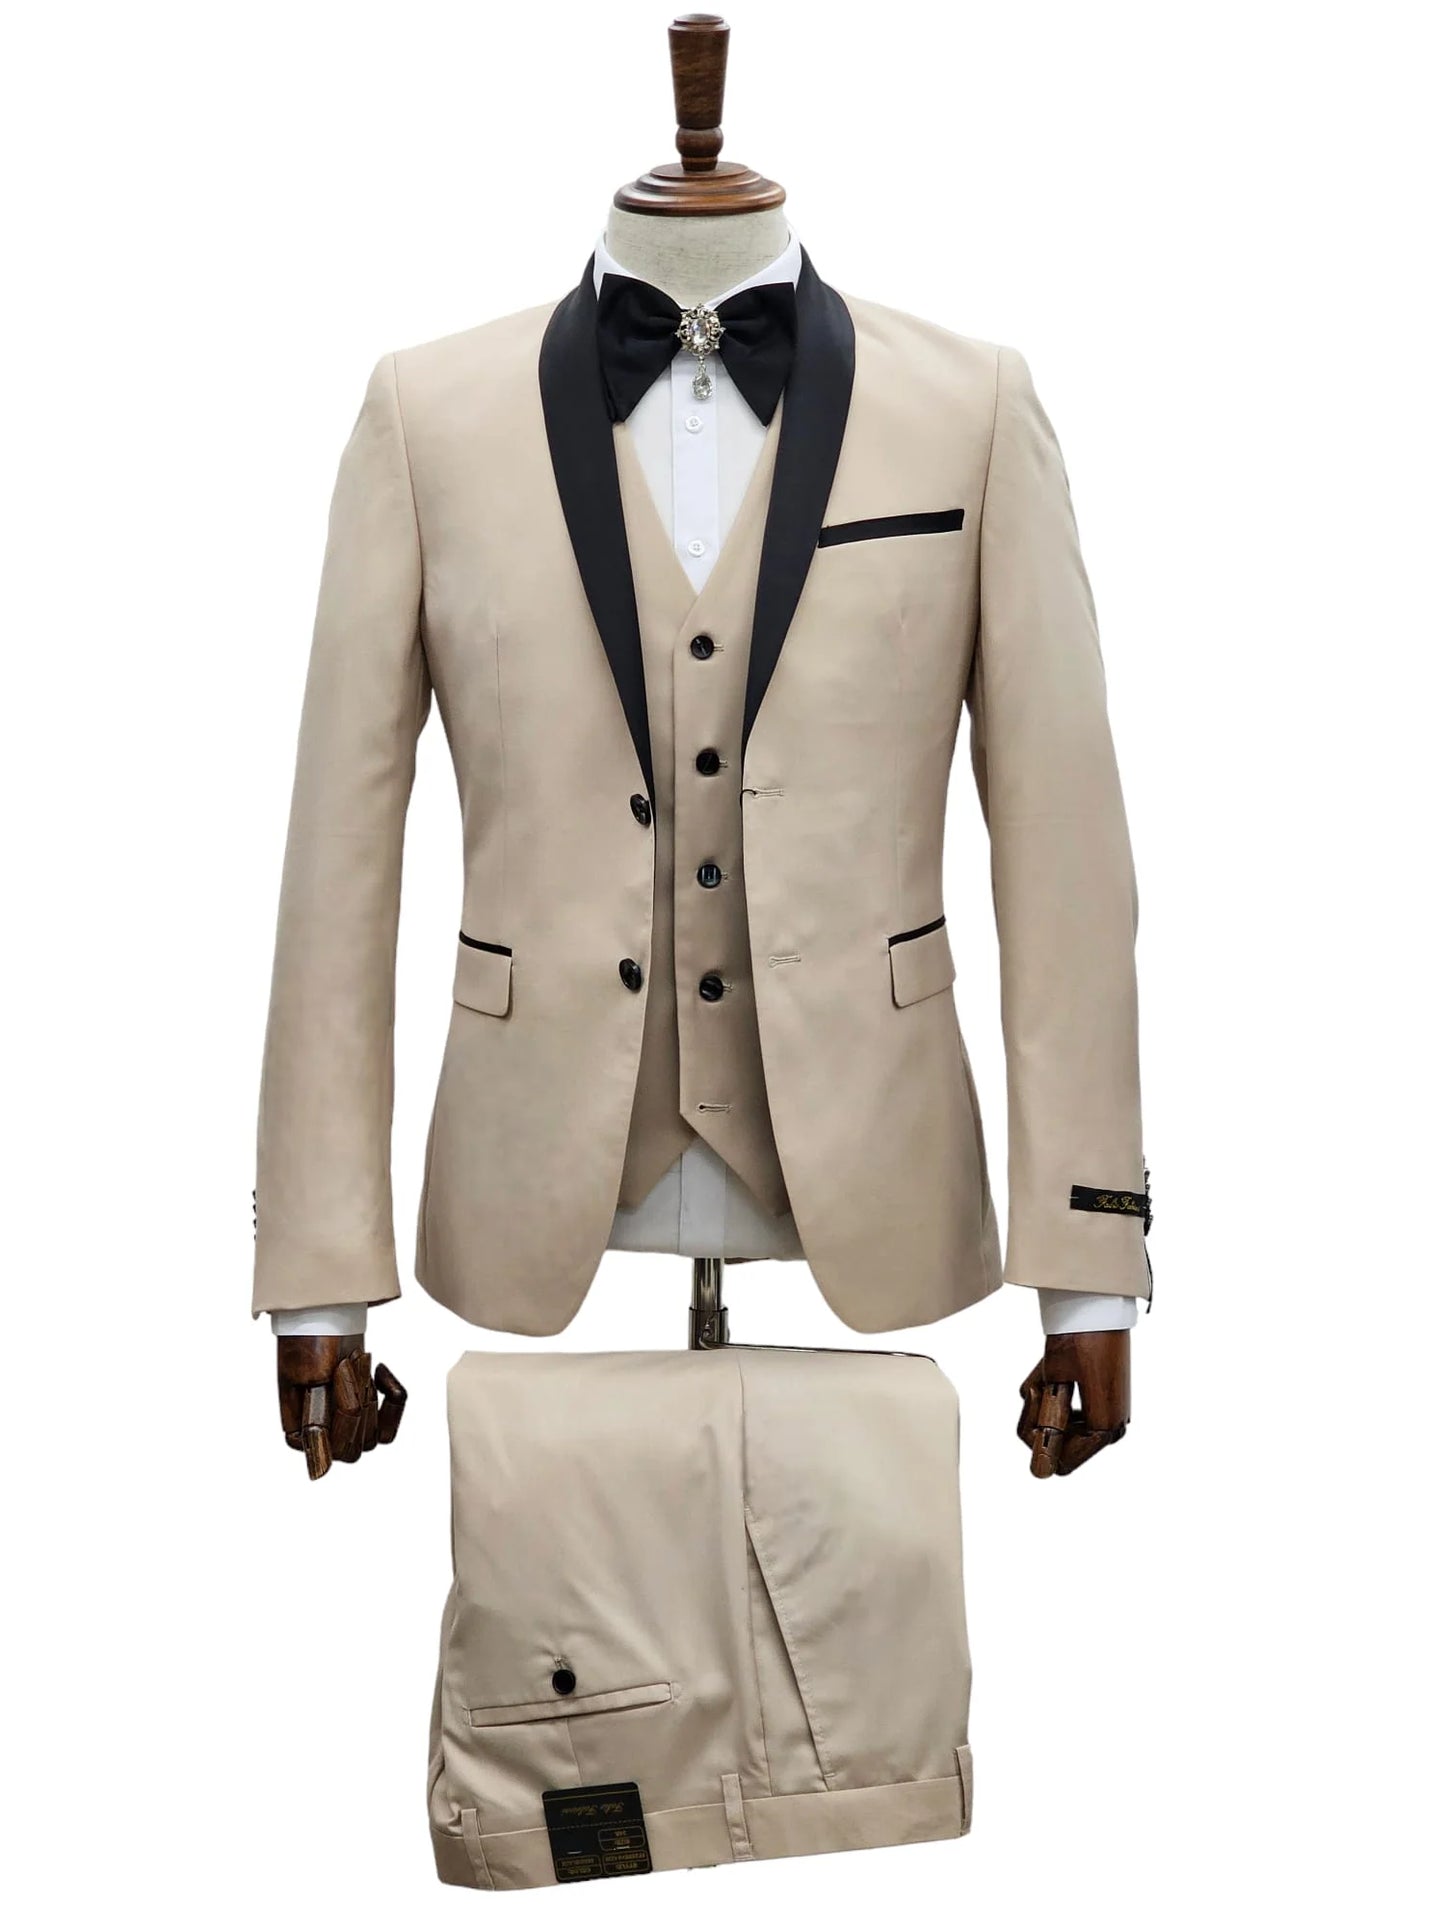 Sand Tuxedo Suit - Timeless Elegance